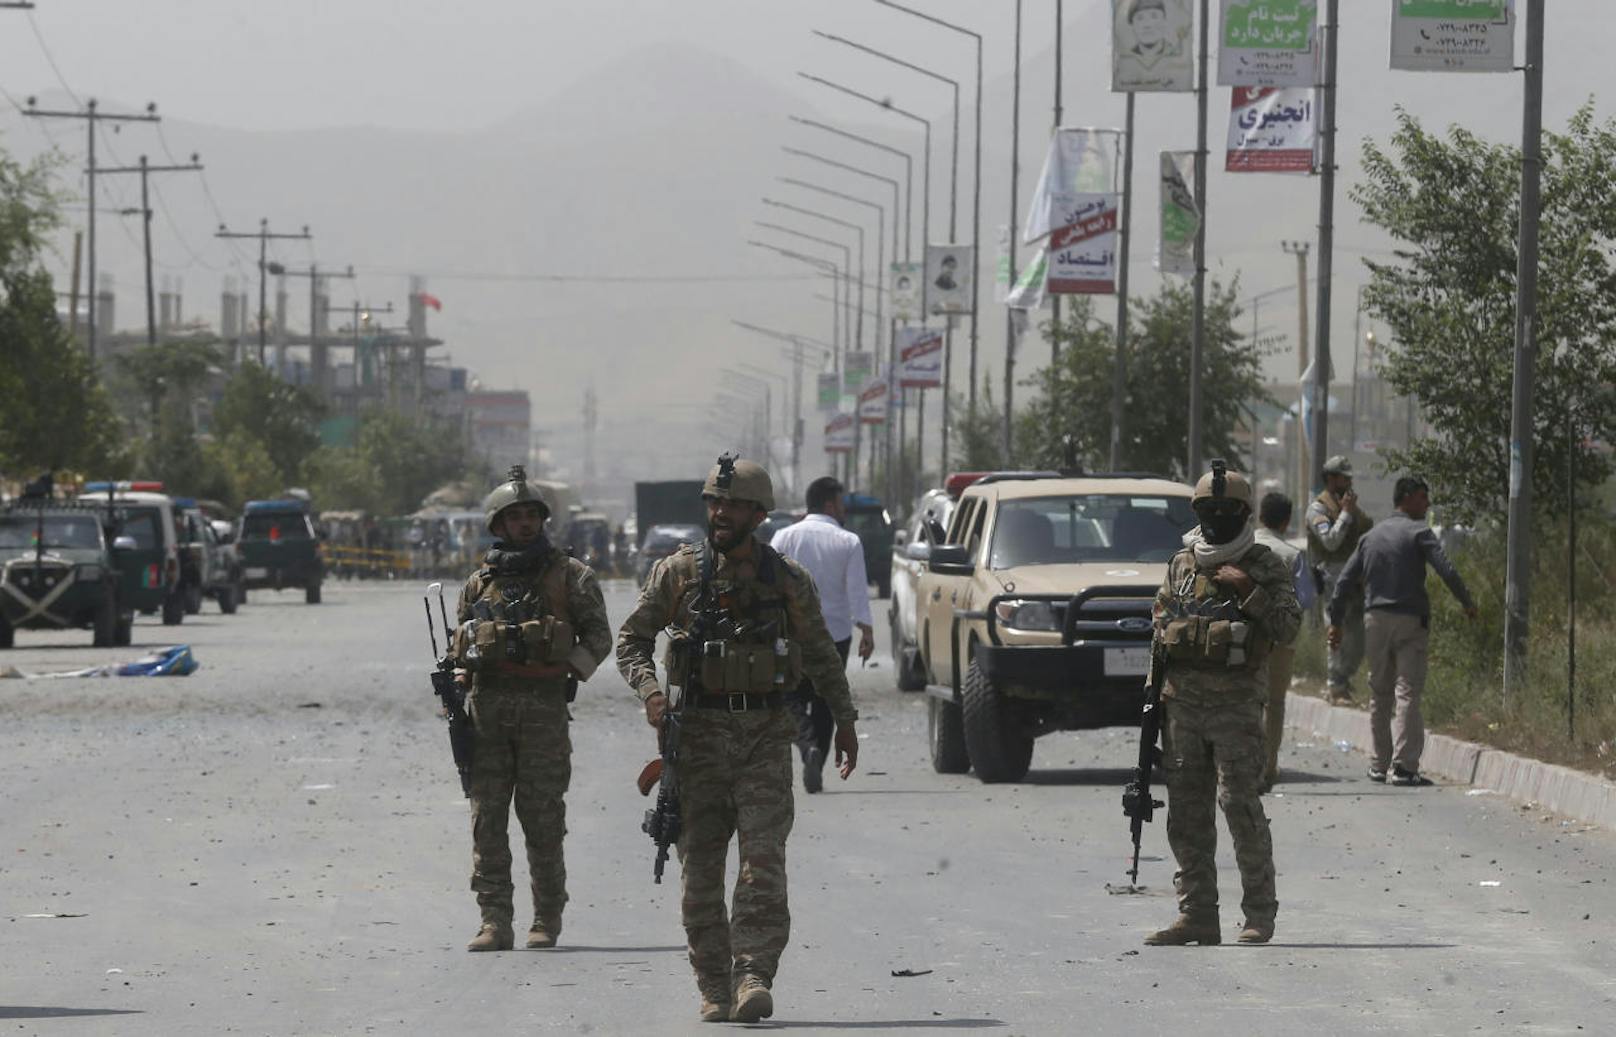 Am Mittwoch ereignete sich ein Selbstmordanschlag in der afghanischen Hauptstadt Kabul. Ein Attentäter hatte sich mittels Autobombe bei einer Polizeistation in die Luft gesprengt.